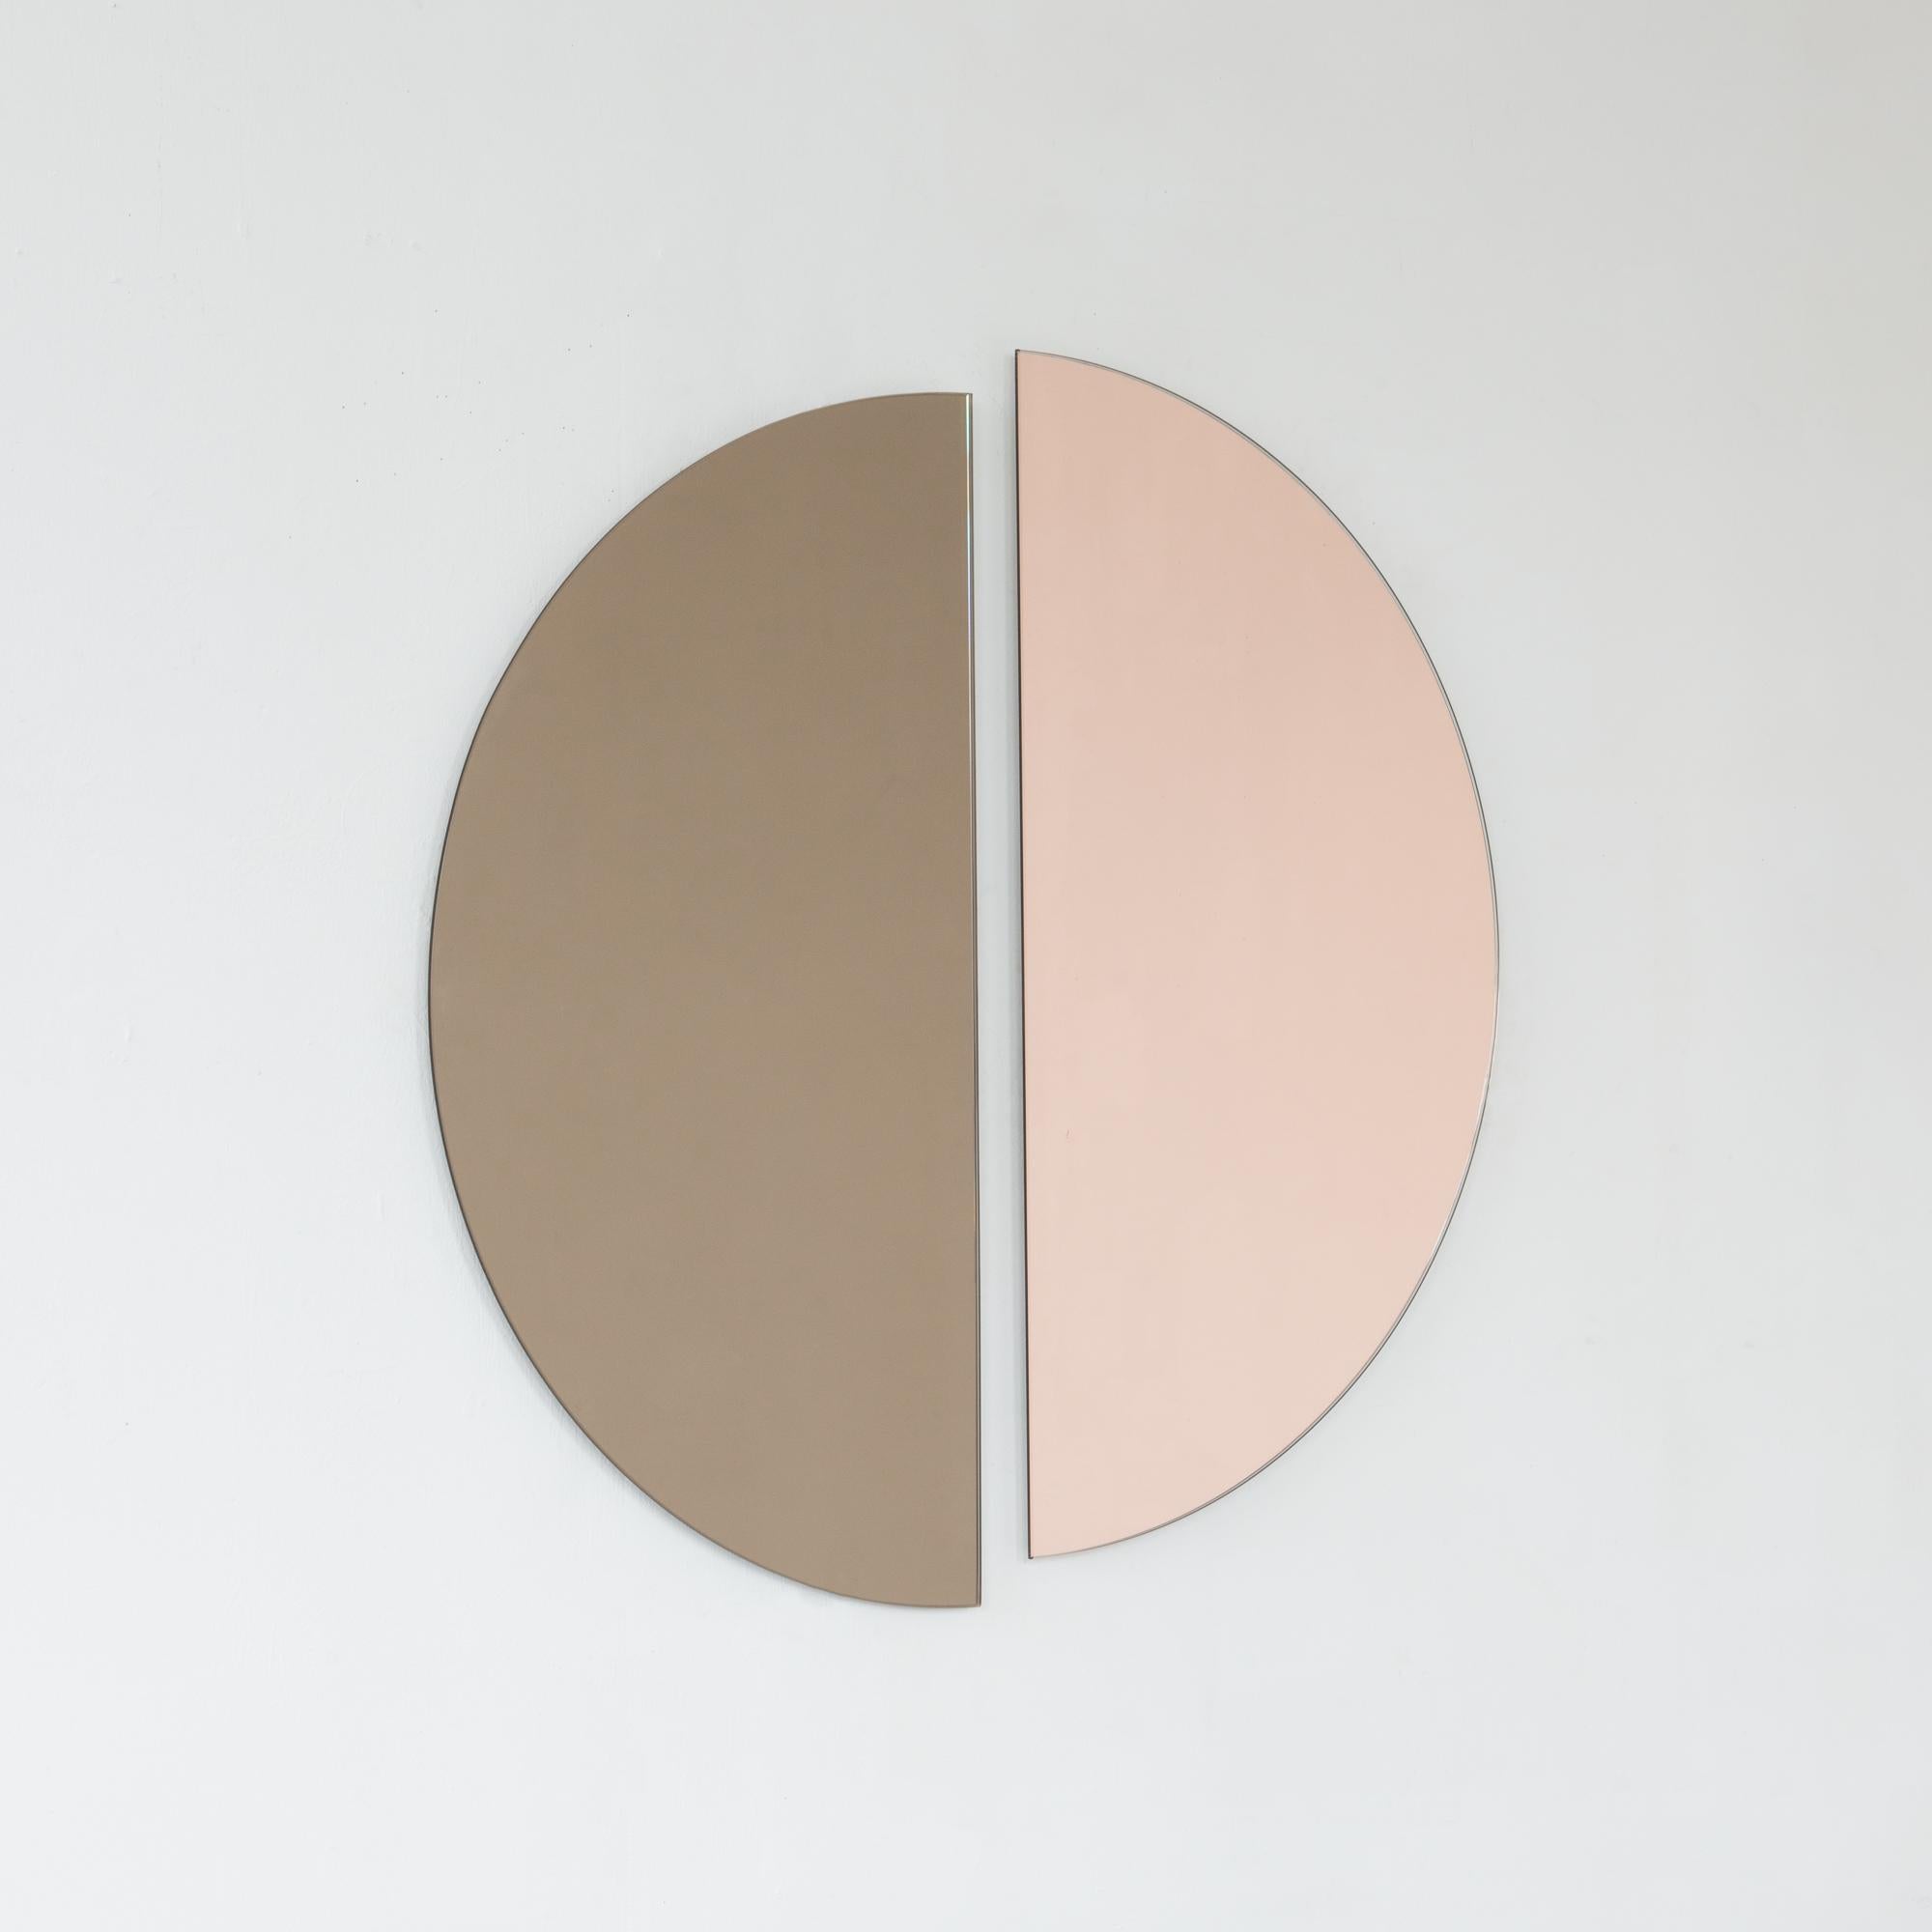 Lot de deux miroirs minimalistes en demi-lune Luna™ bronze + or rose (pêche) teintés sans cadre avec un effet flottant. Équipé d'un système d'accrochage ingénieux et de qualité pour une installation flexible dans 4 directions différentes. Conçu et